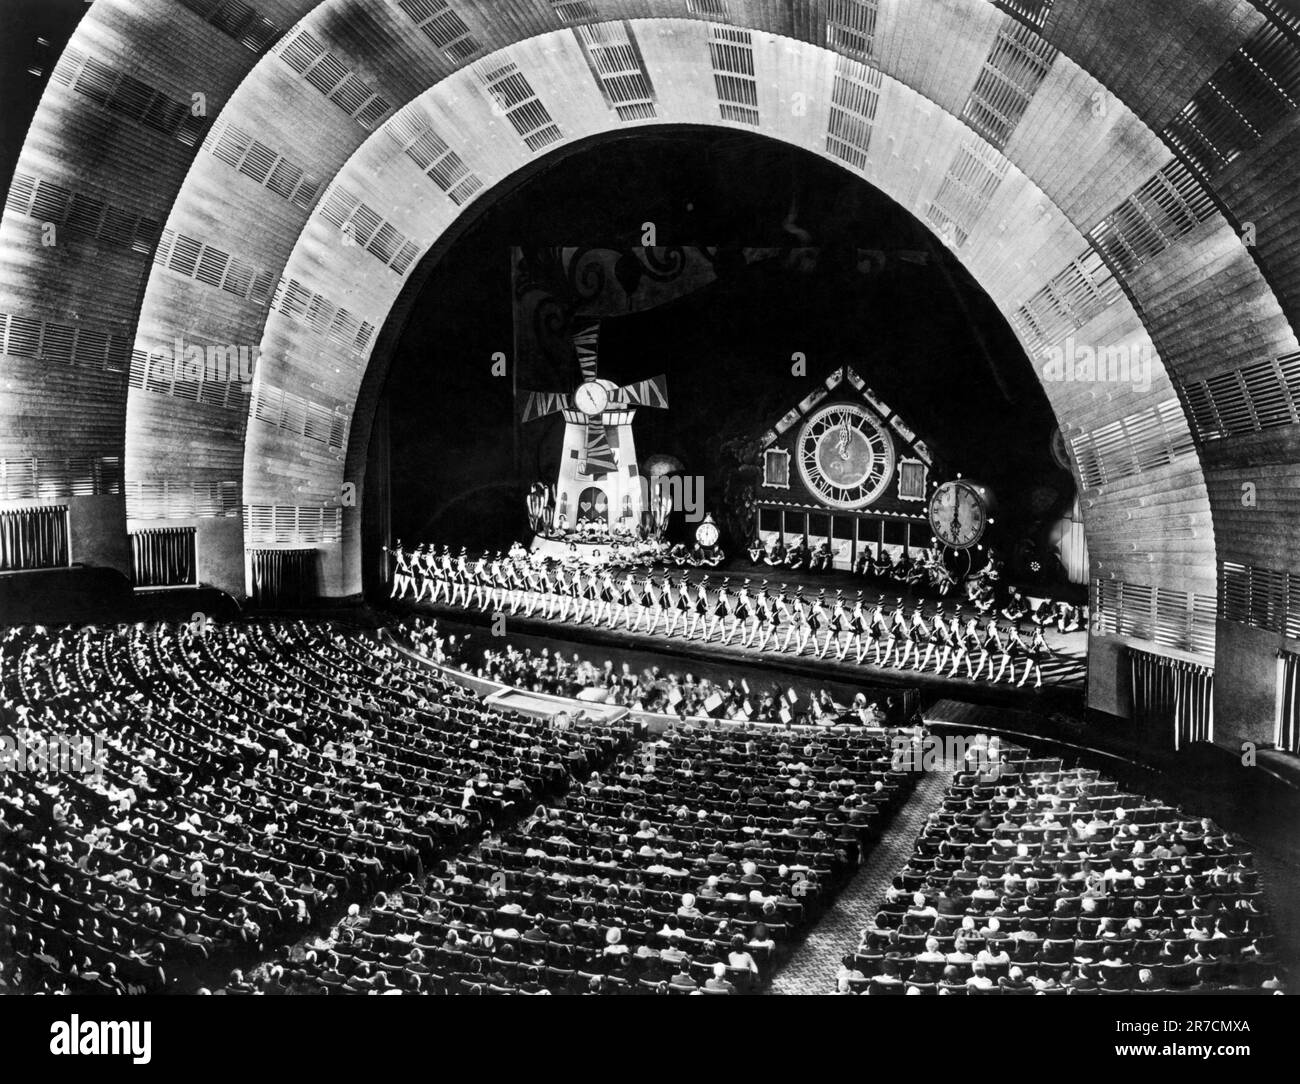 New York, New York 1949 l'auditorium du radio City Music Hall au Rockefeller Center avec une capacité de 6 200 personnes regardant les Rockettes célèbres. Banque D'Images